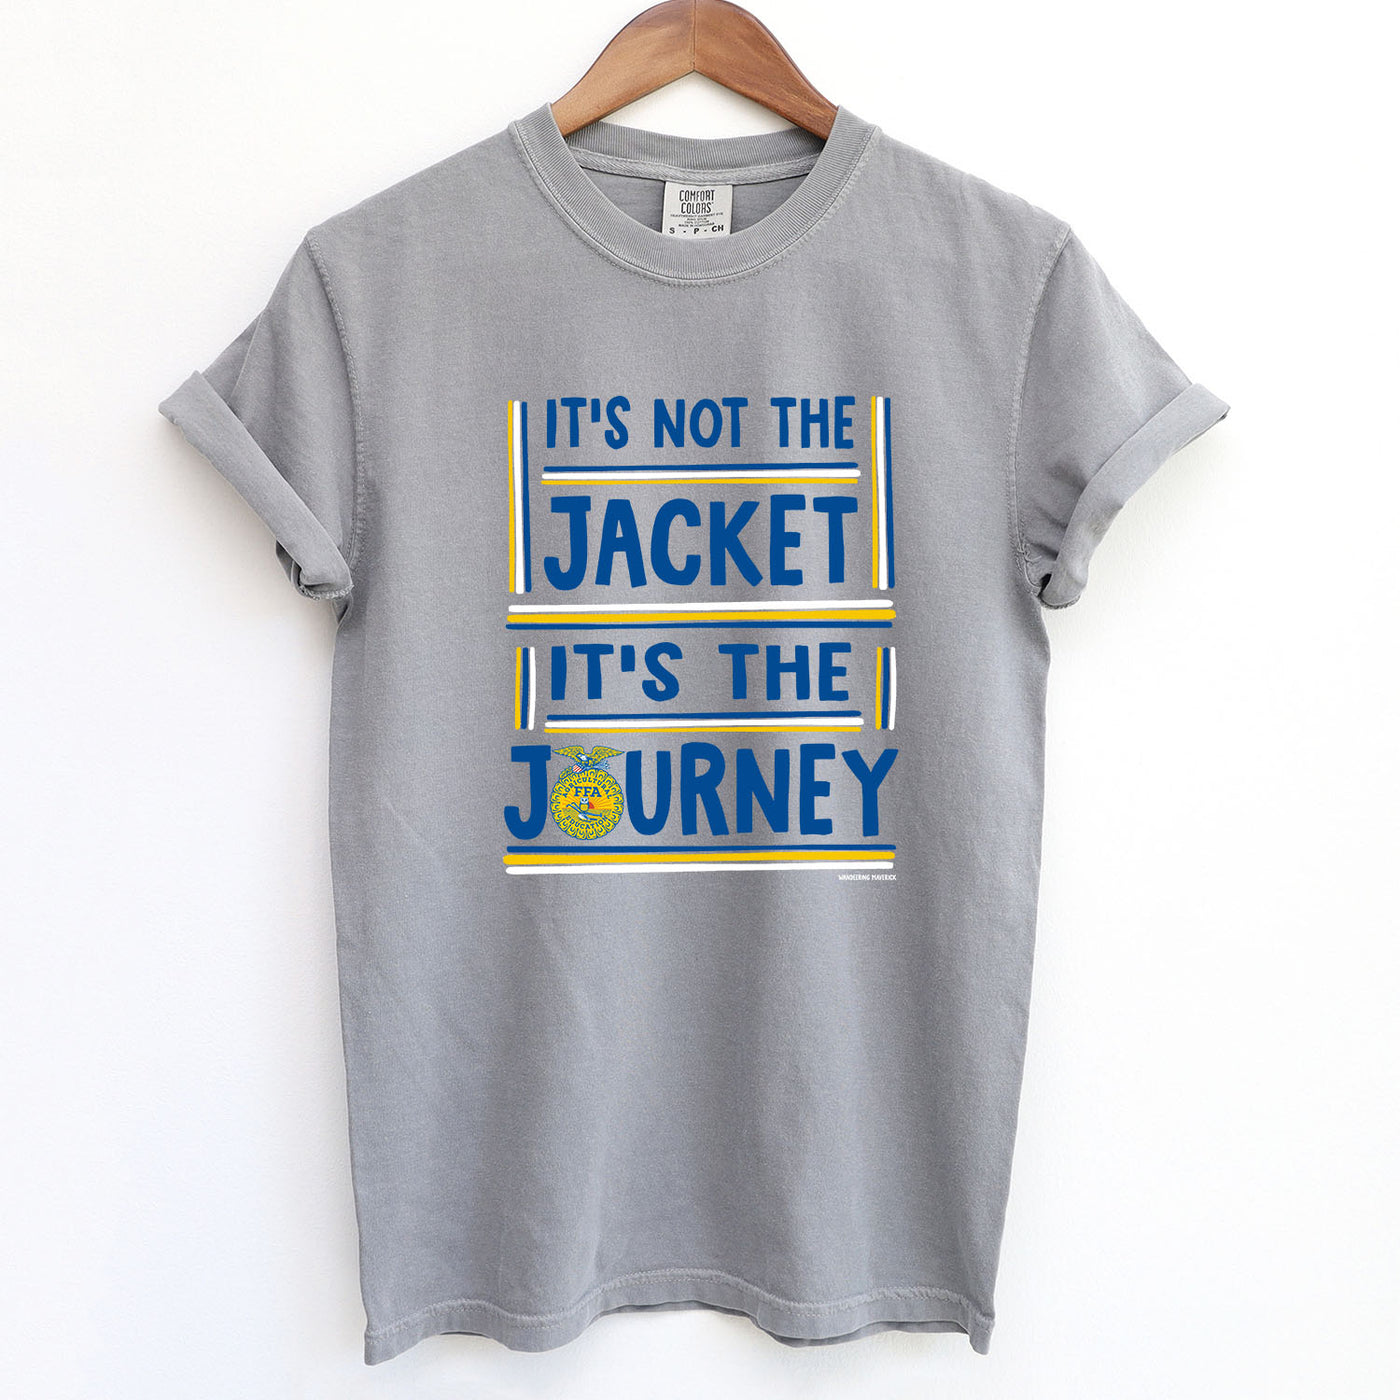 It's not the jacket it's the journey ComfortWash/ComfortColor T-Shirt (S-4XL) - Multiple Colors!